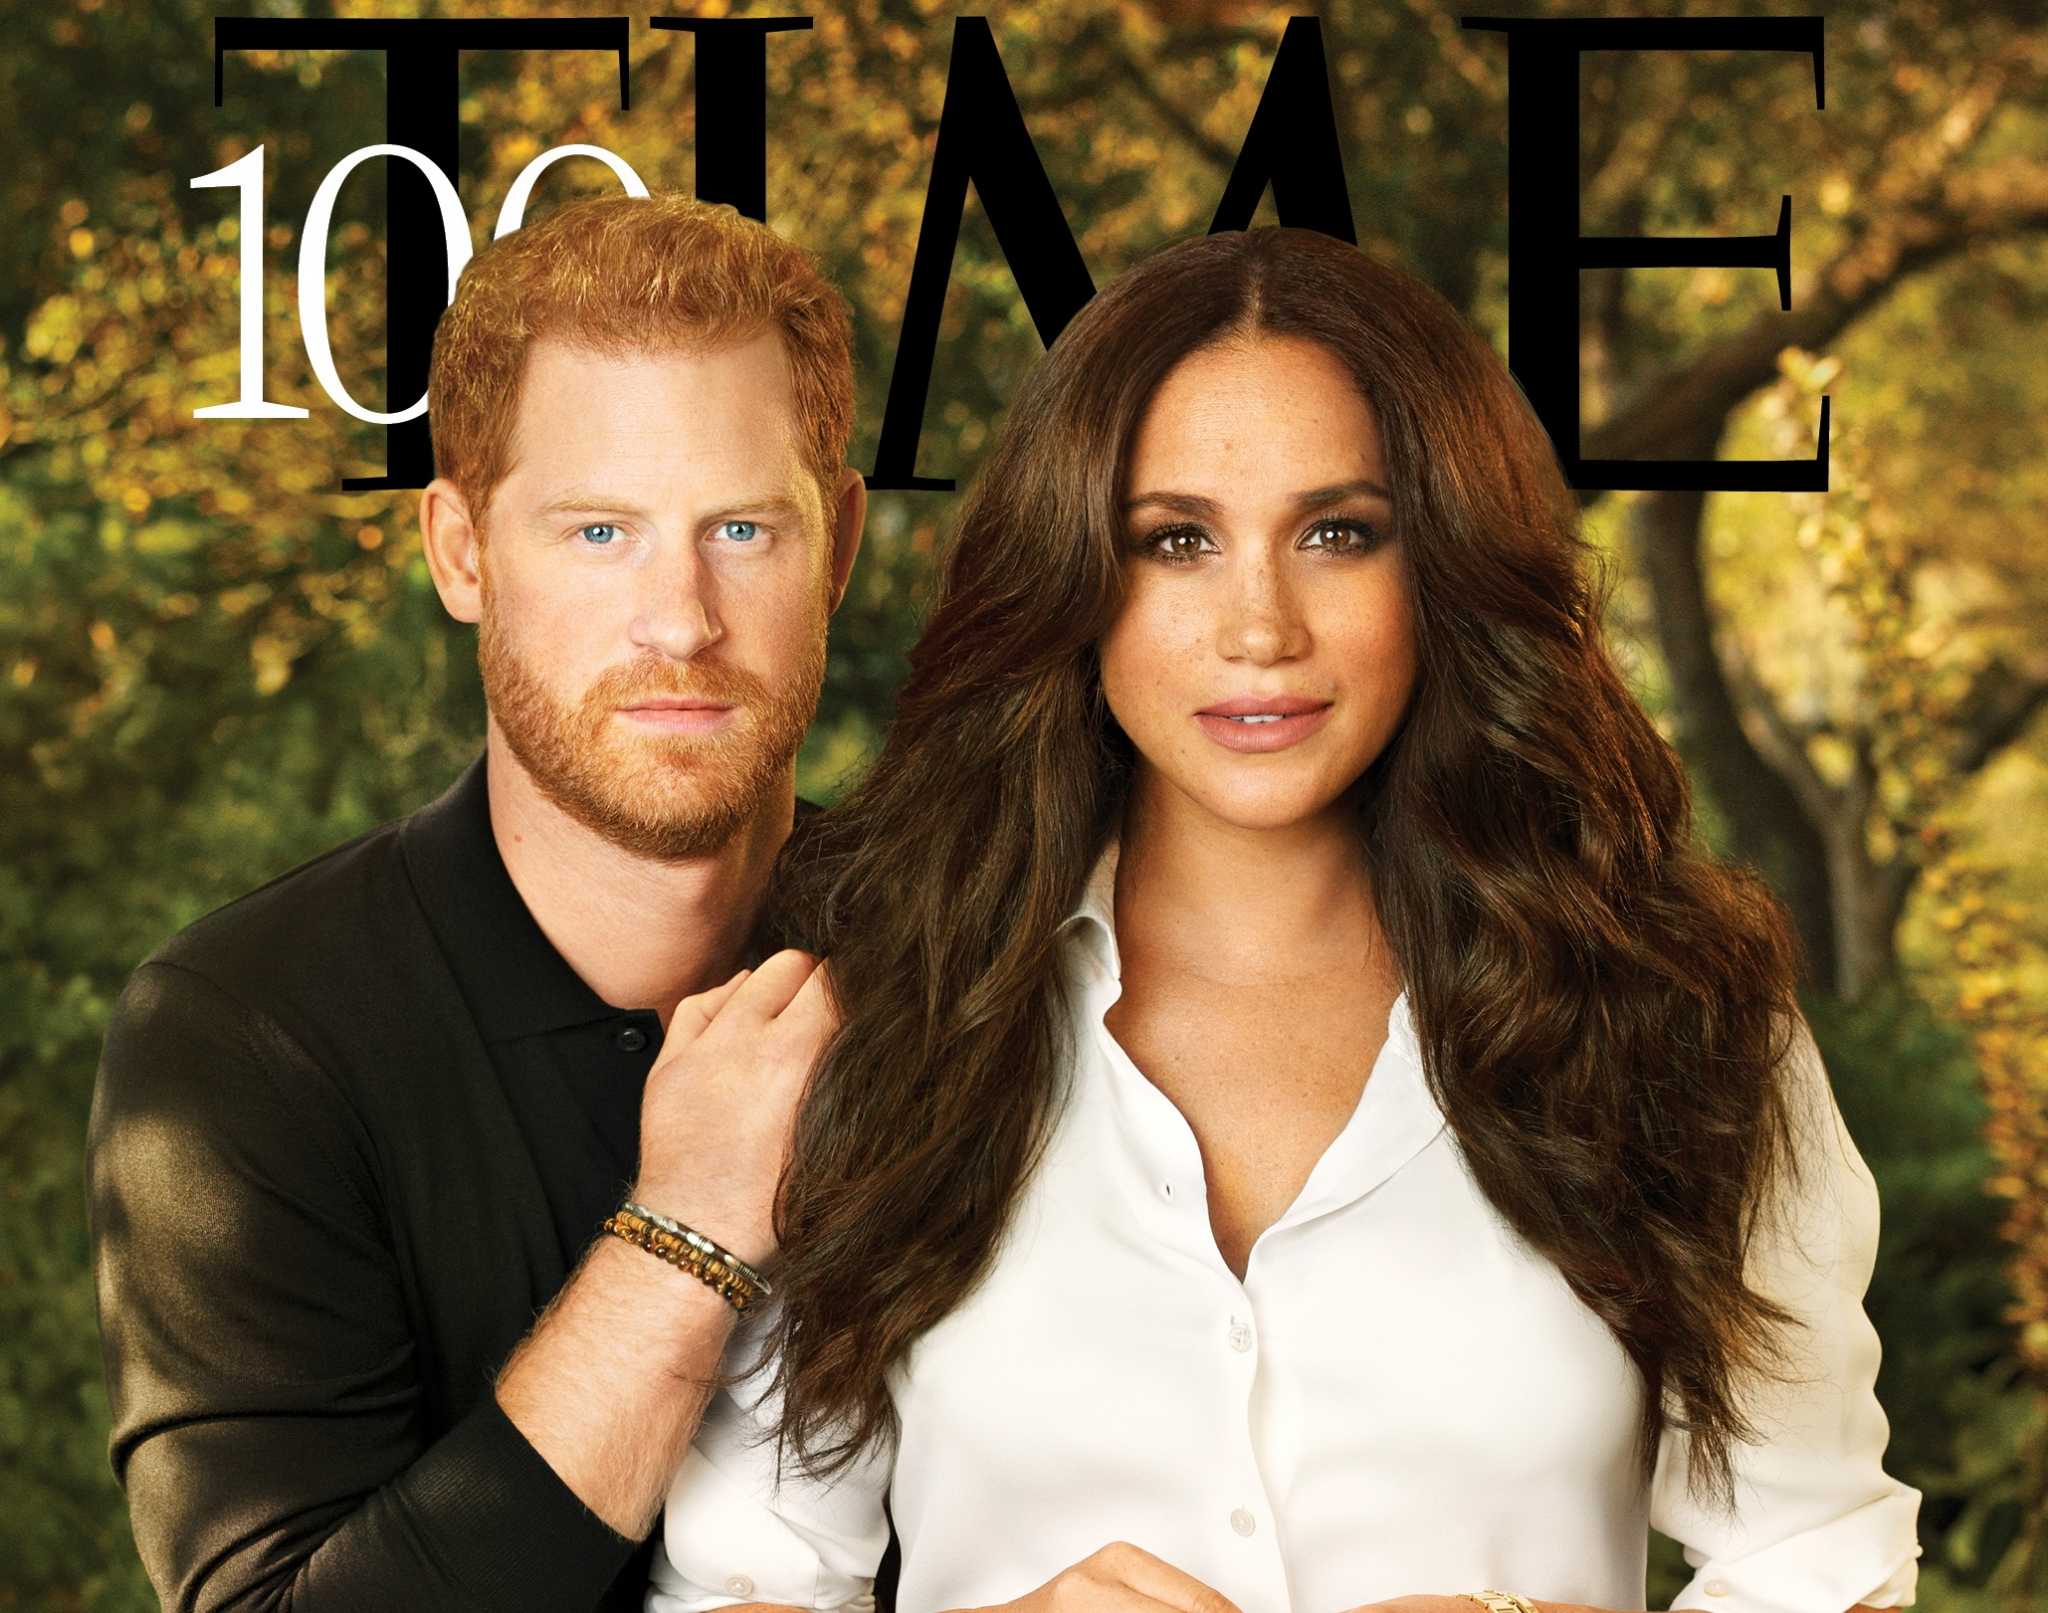 Περιοδικό Time: Ο Χάρι και η Μέγκαν στους 100 πιο επιδραστικούς ανθρώπους στον κόσμο